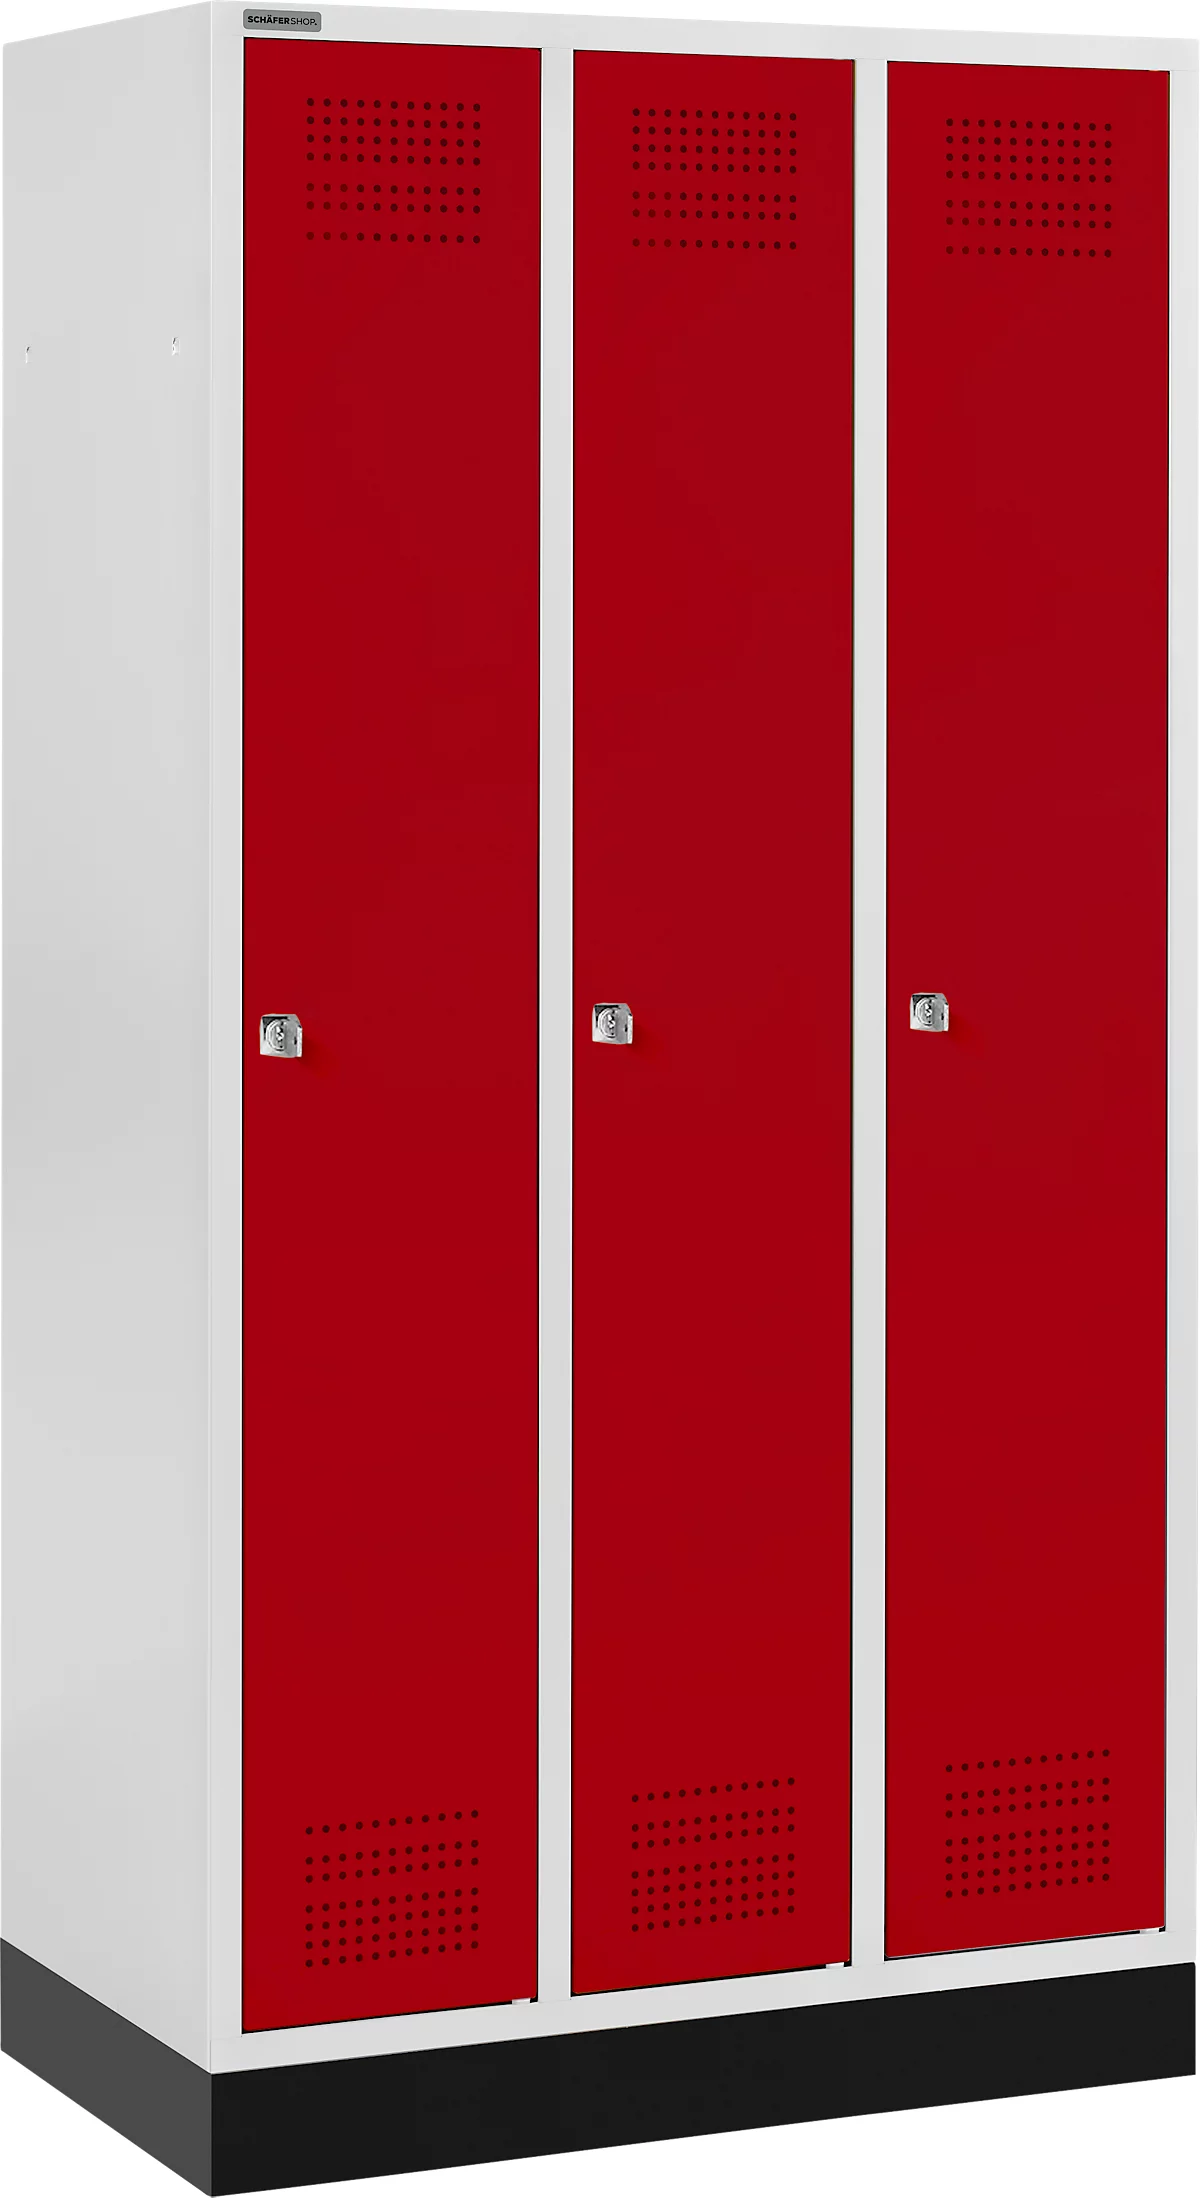 Schäfer Shop Genius Kledinglocker met fitting, 3 compartimenten, cilinderslot, lichtgrijs/rood